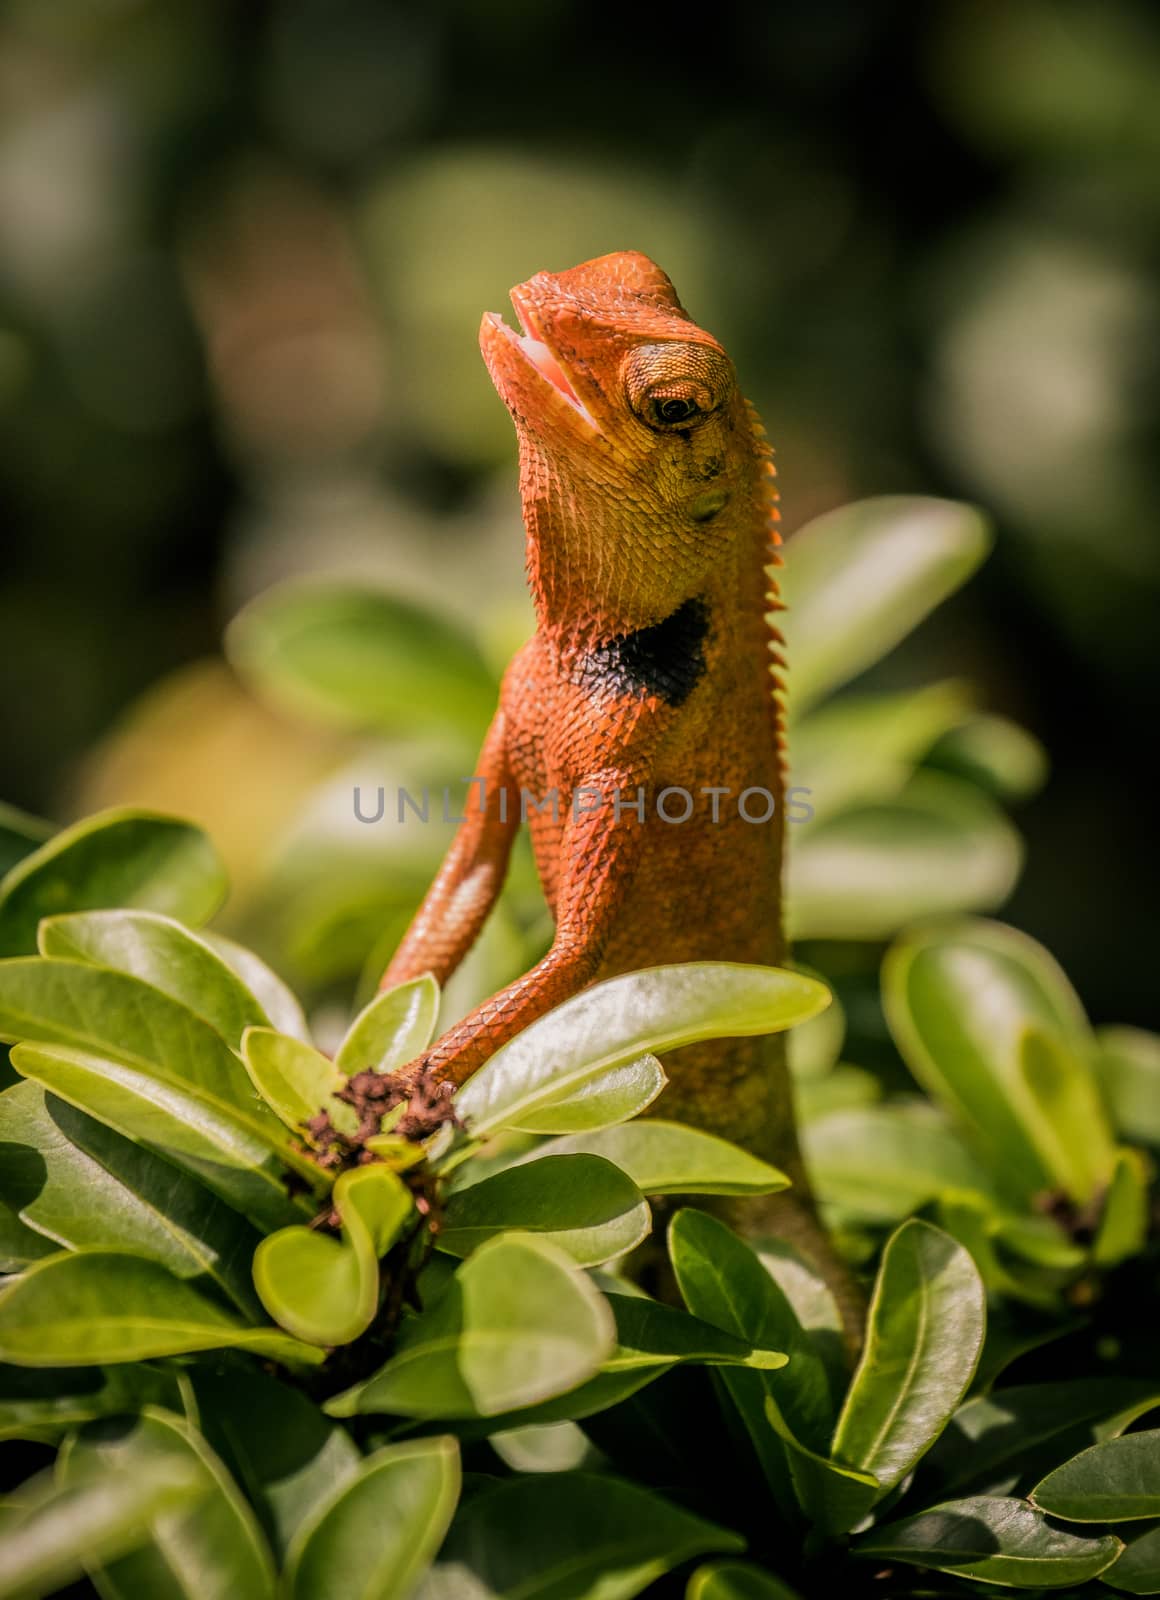 a little orange chameleon on the bush in a garden